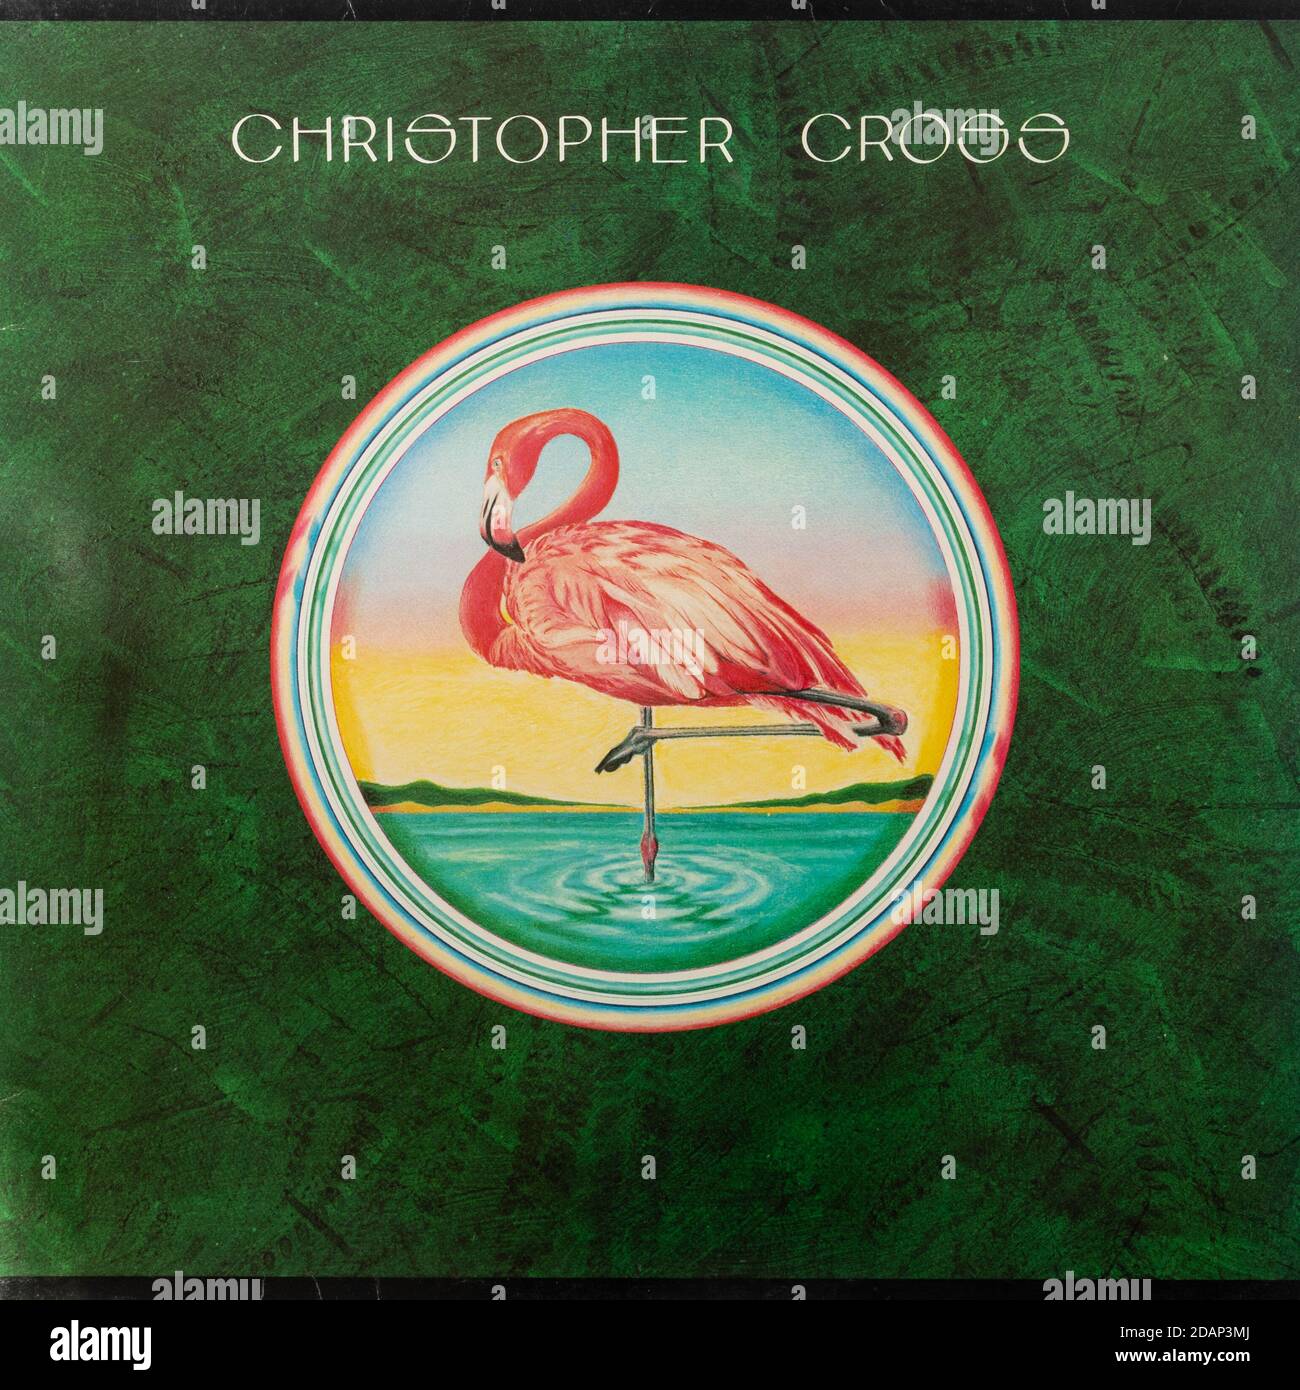 Christopher Cross album di debutto del cantautore americano, copertina disco in vinile LP Foto Stock